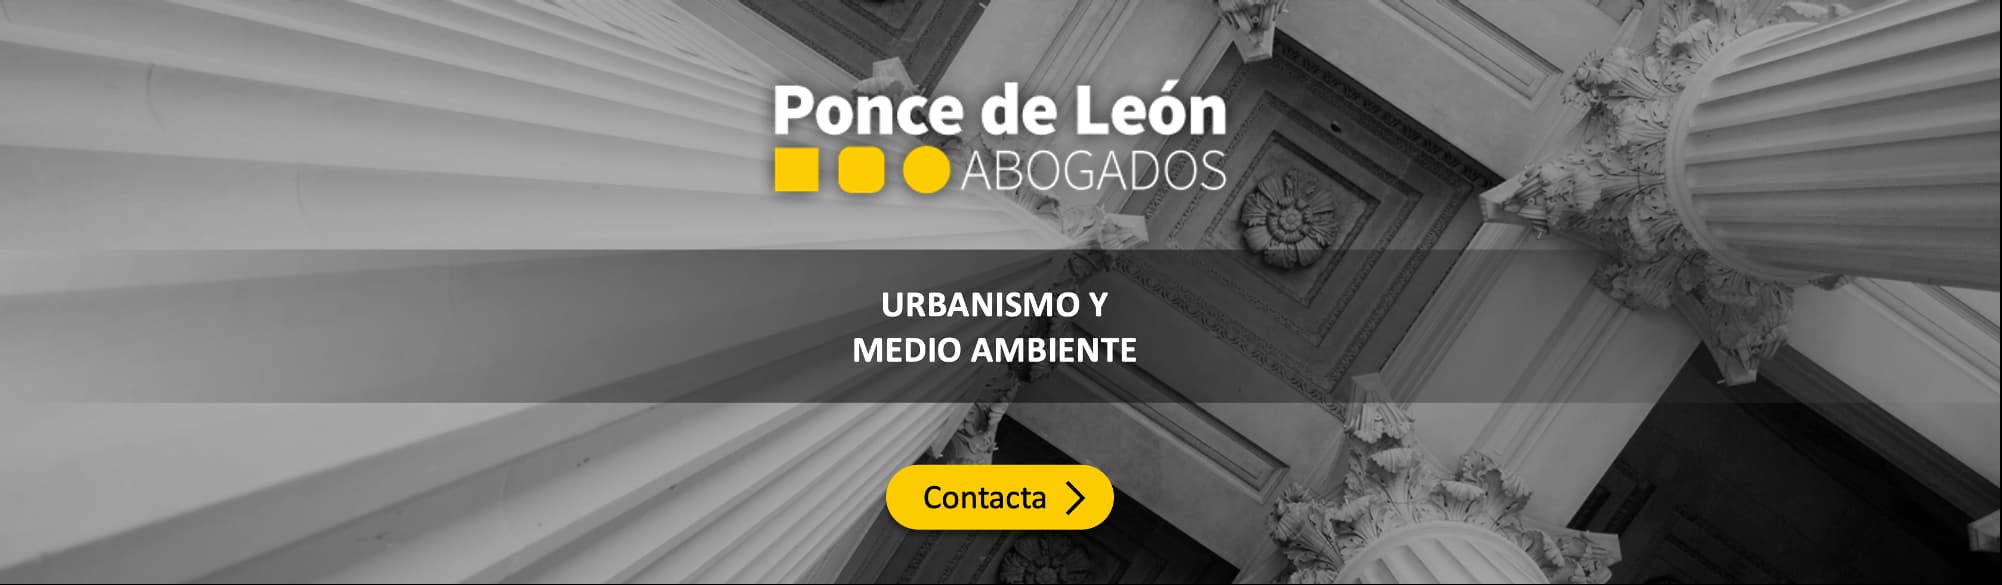 Banner Ponce de León Abogados Urbanismo 3